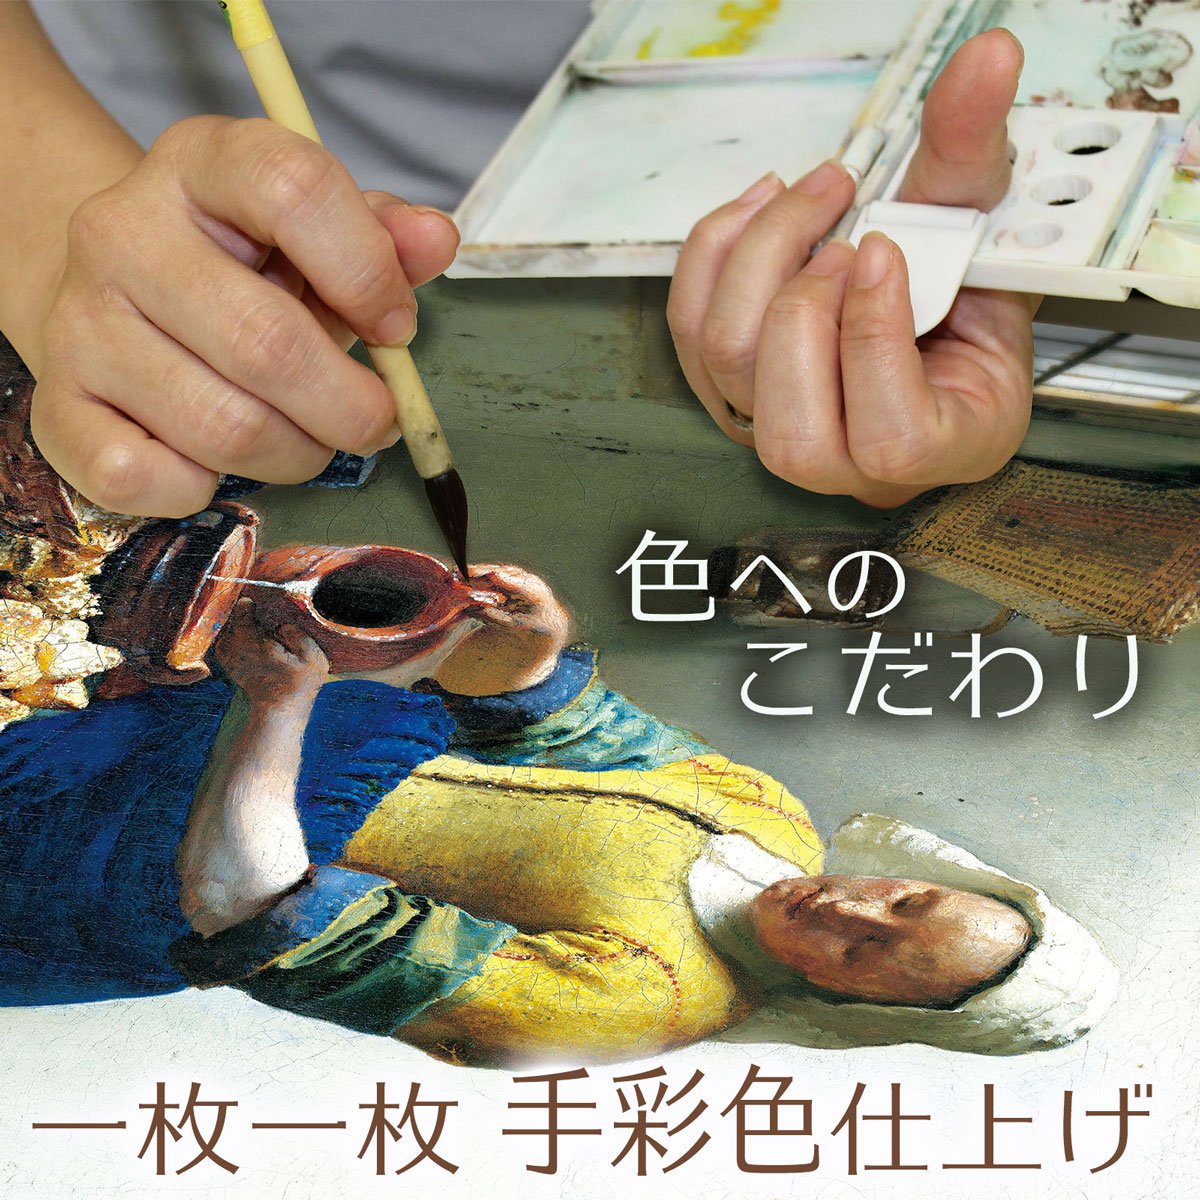 日本の名画 浮世絵 美人画 団扇を持つおひさ(うちわをもつおひさ